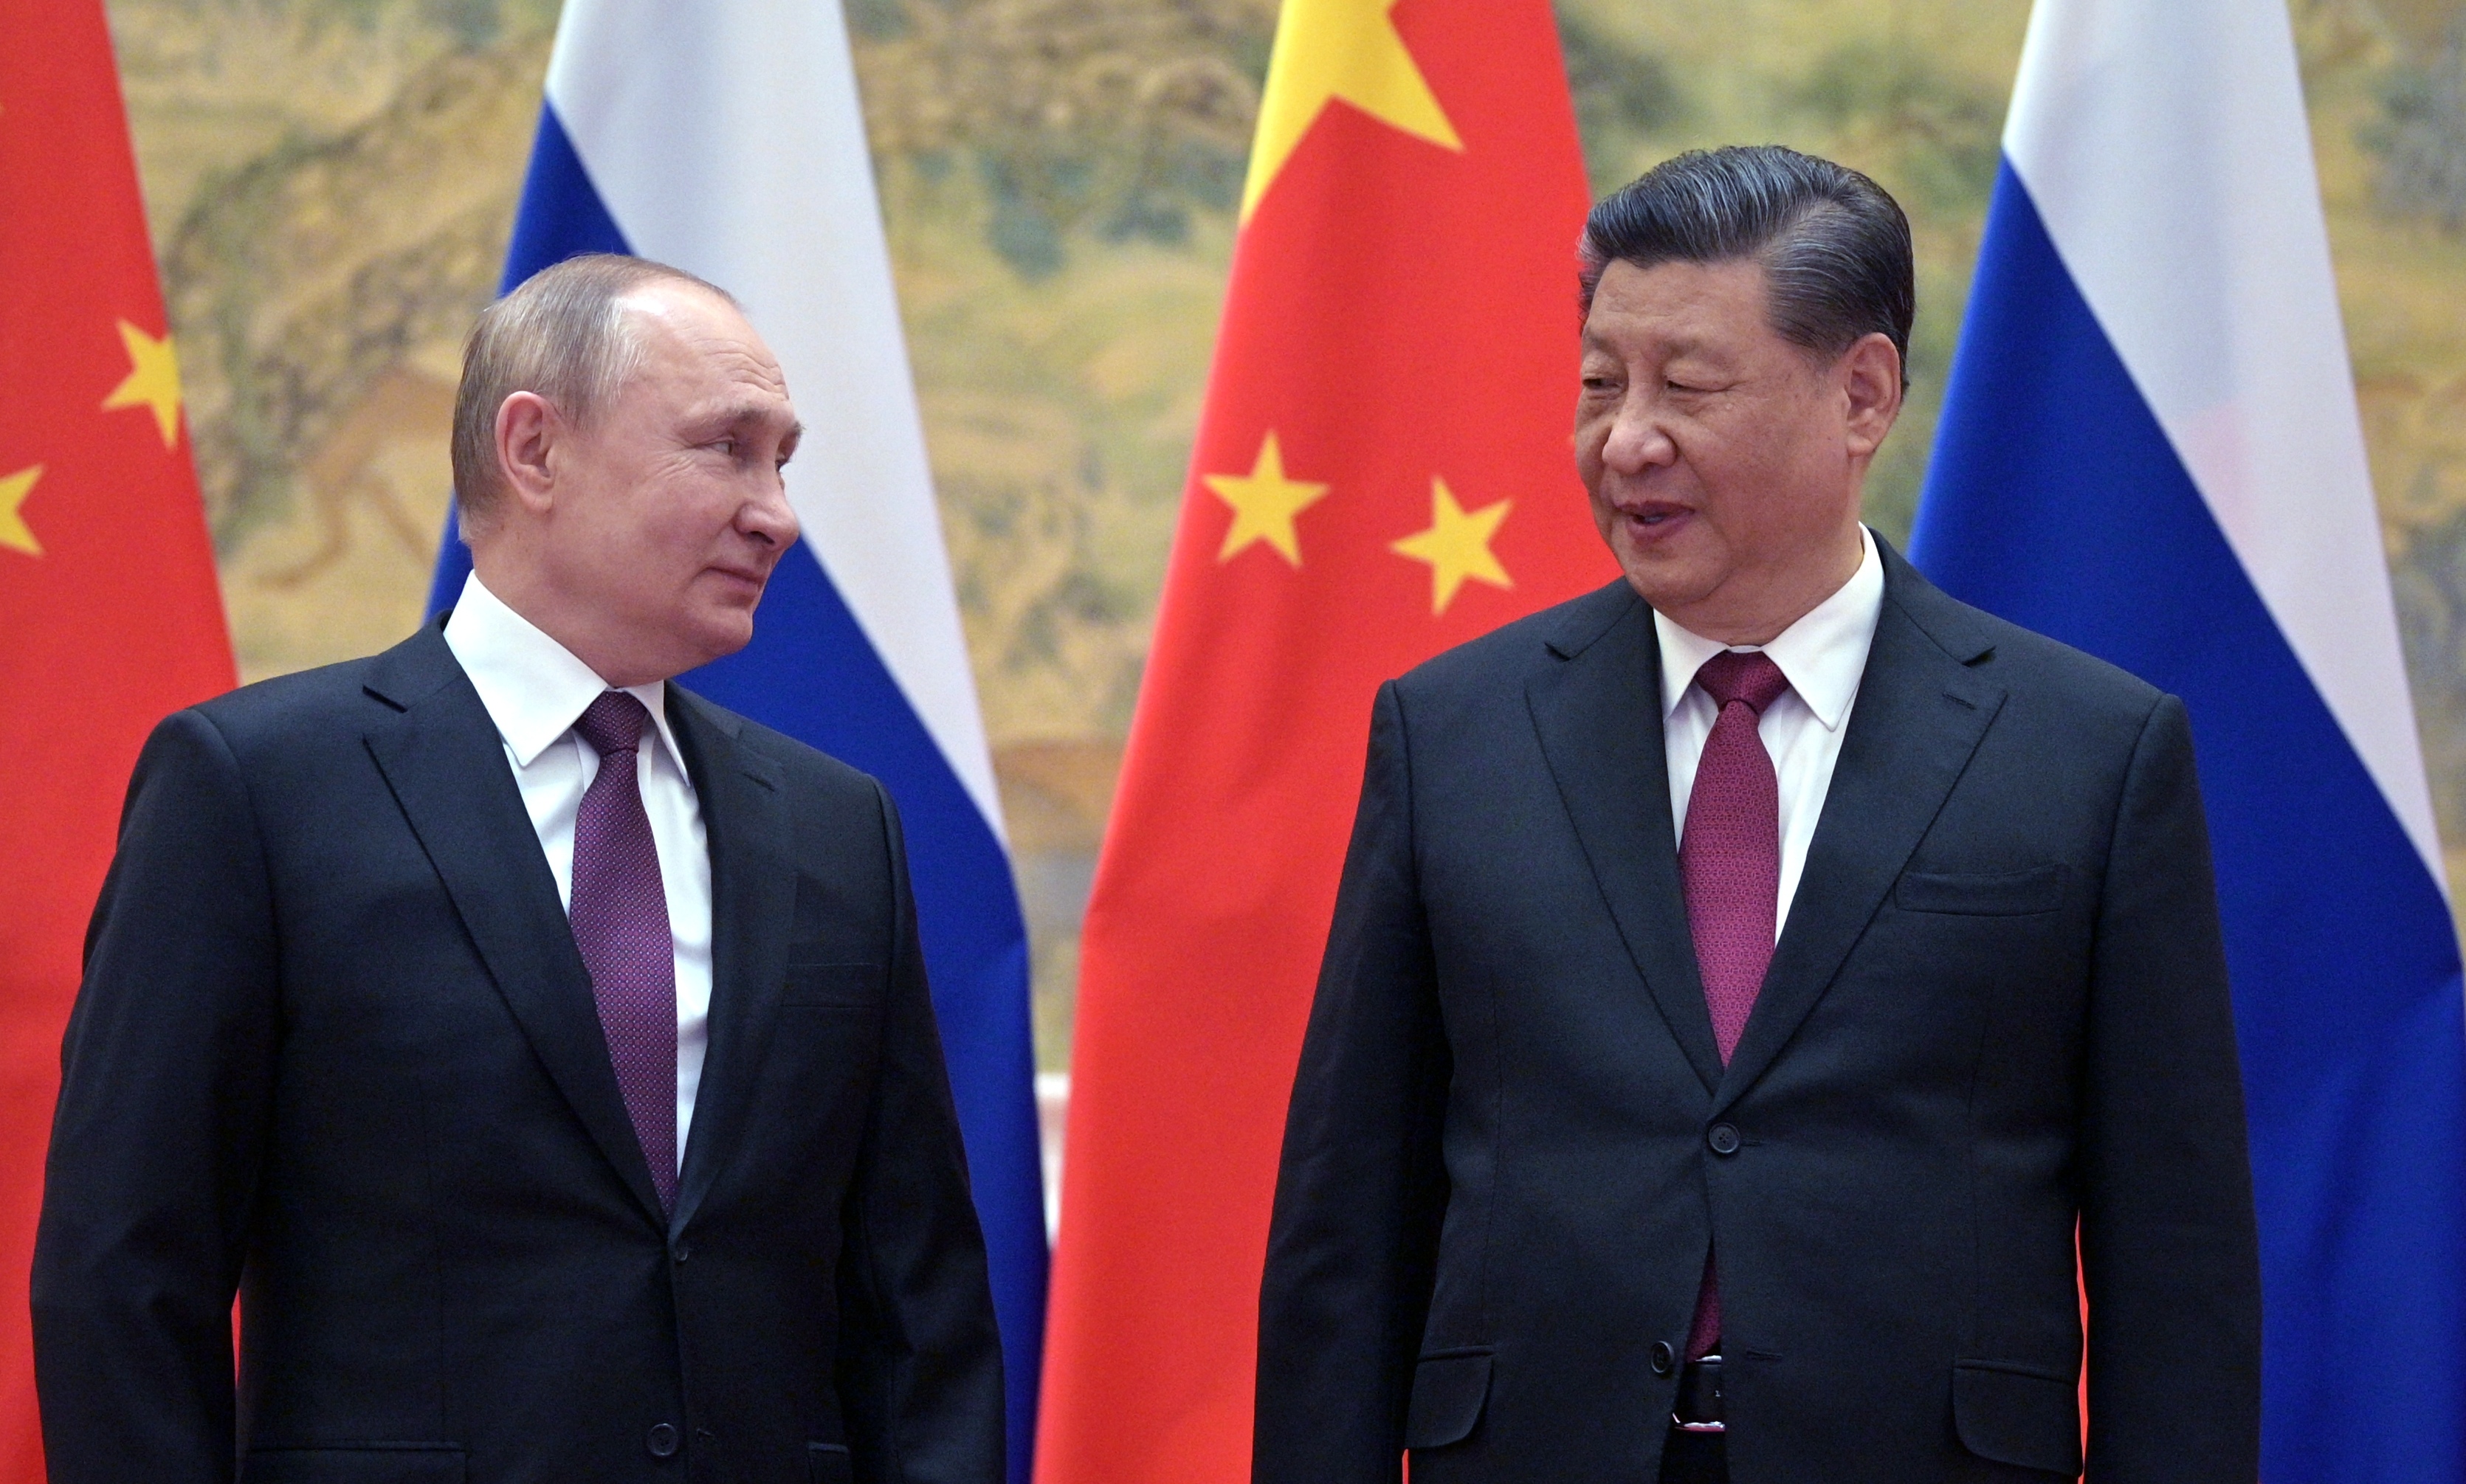 युक्रेन युद्धमा साथको अपेक्षा गर्दै रसियन राष्ट्रपति पुटिन चीन आइपुगे